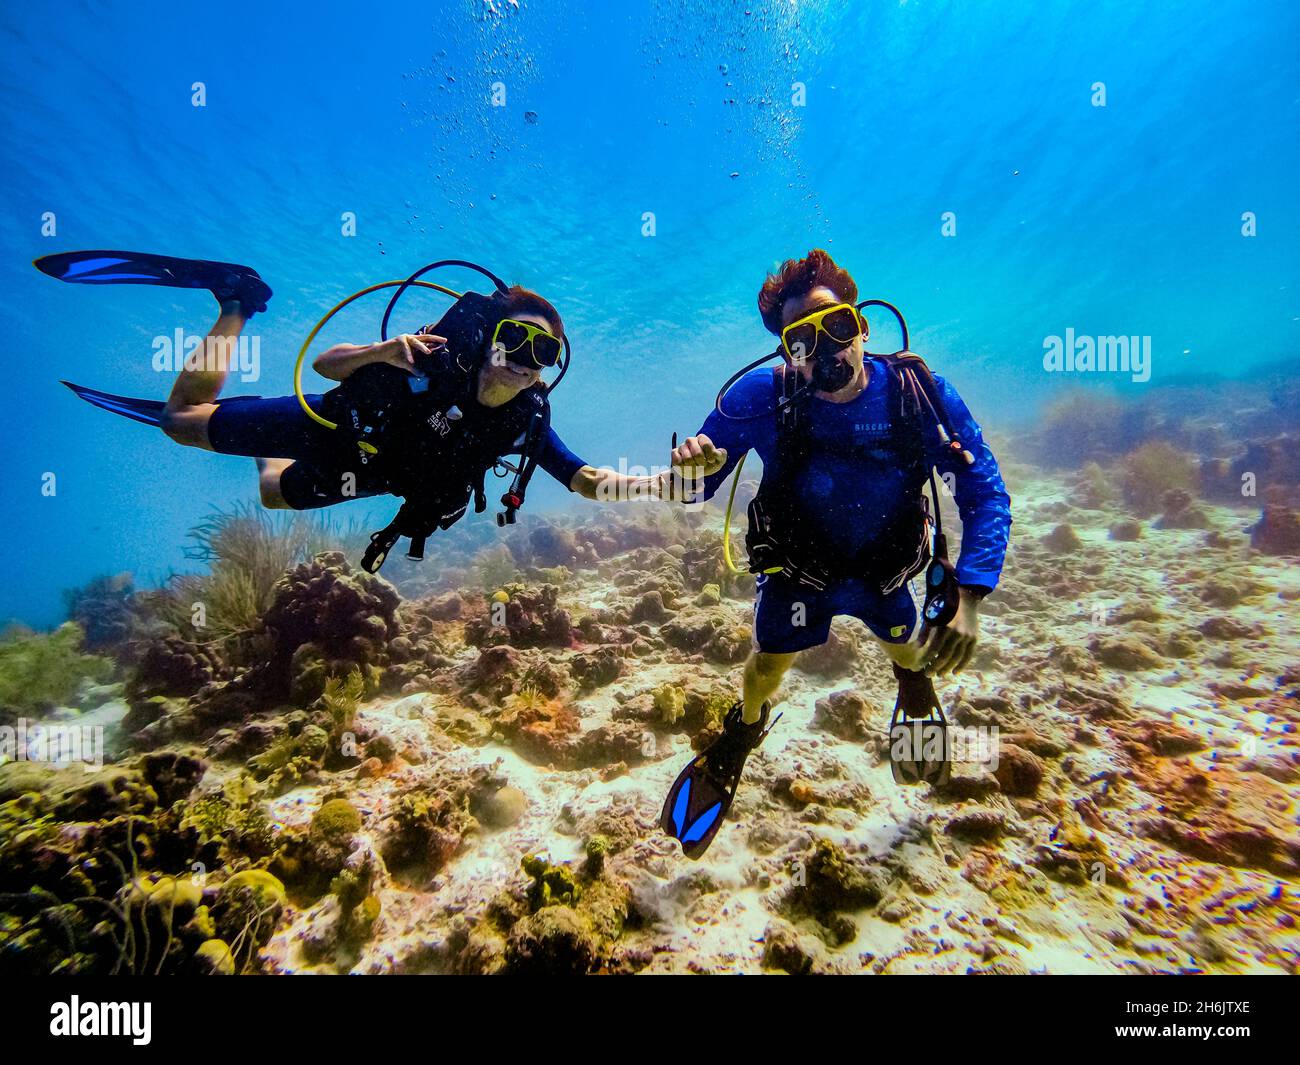 Couple plongée sous-marine tout en explorant les récifs coralliens de Bonaire, Antilles néerlandaises, Caraïbes, Amérique centrale Banque D'Images